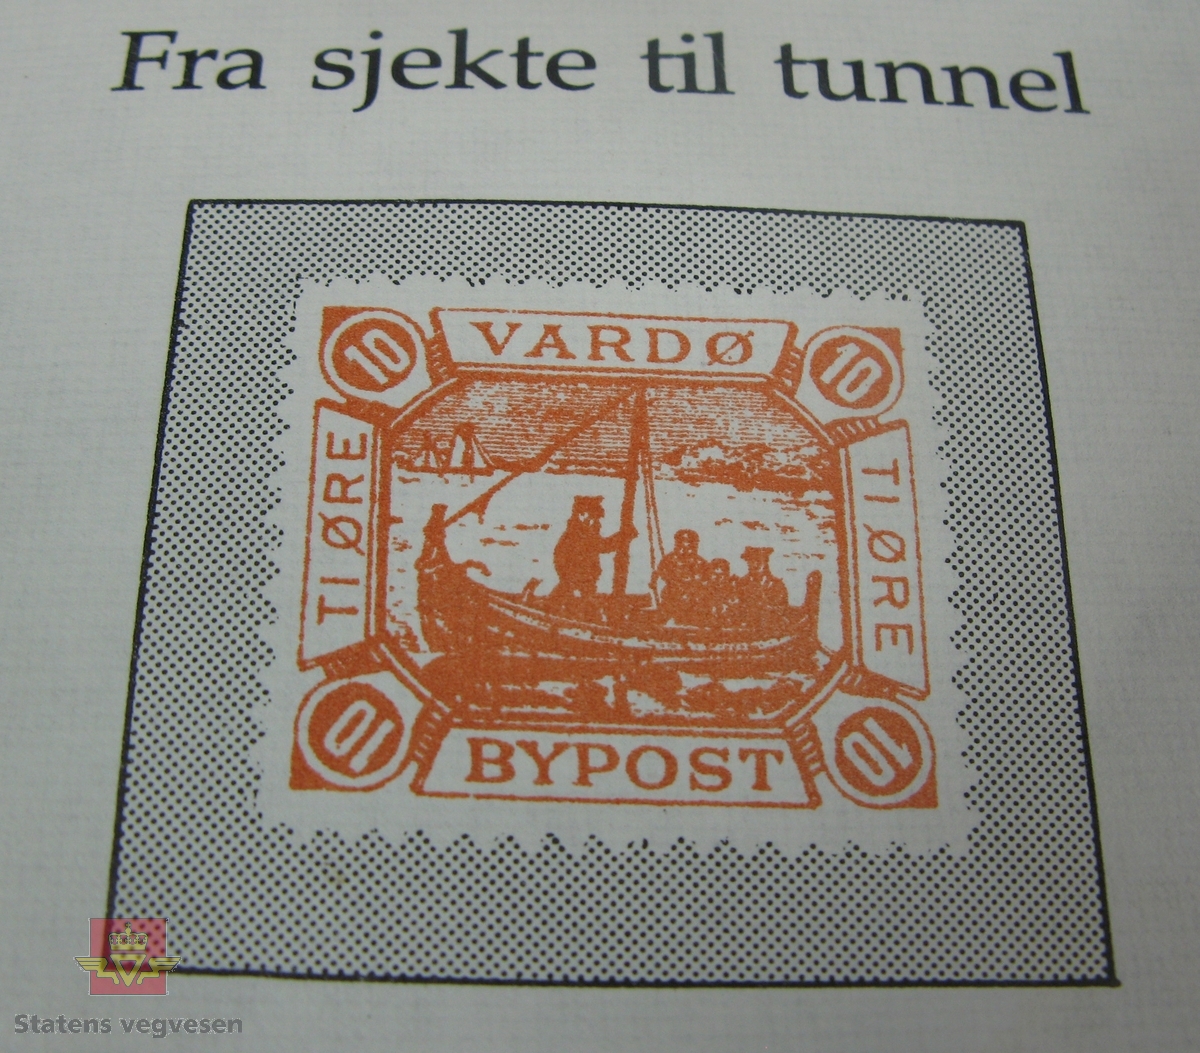 Konvolutt med frimerker og stempel som viser til vegåpningen av Vardøtunnelen den 16. august 1983. Påskrift fra Hjalmar Halvorsen og Vardø Frimerkeklubb.